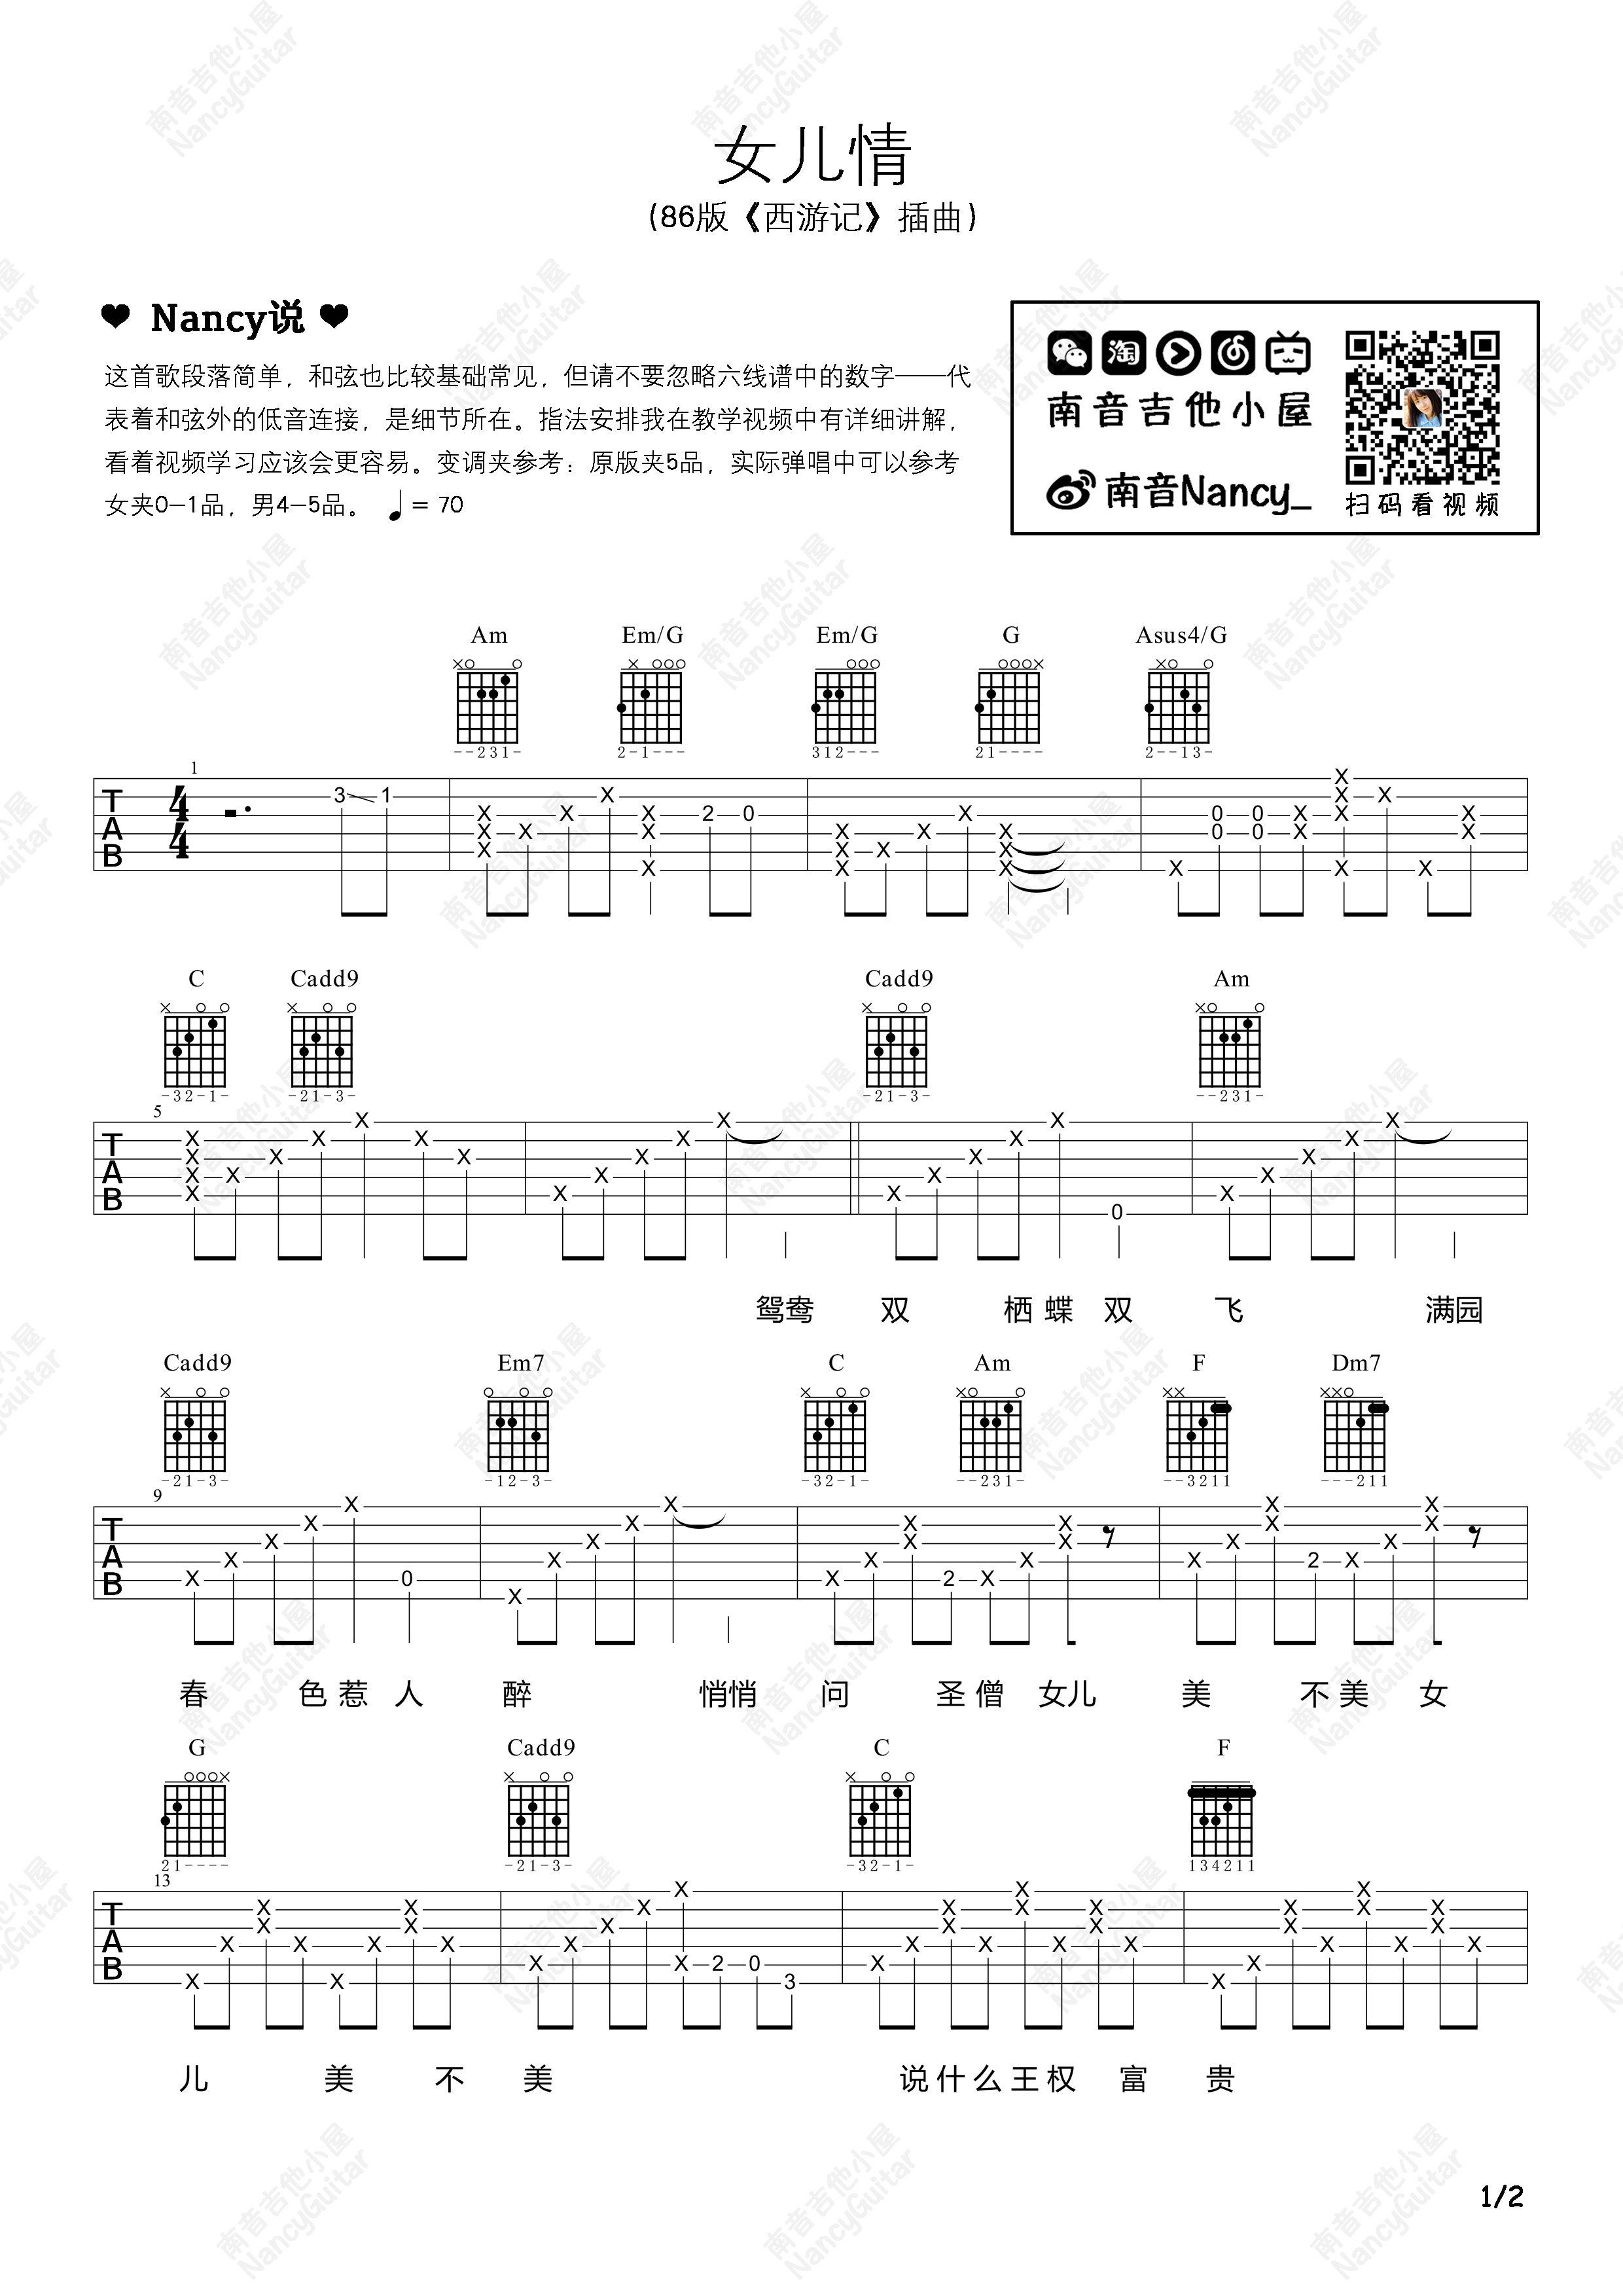 歌谱《女儿情》吴静/演唱 1986版《西游记》插曲与主题曲-美声唱法歌曲谱 - 乐器学习网